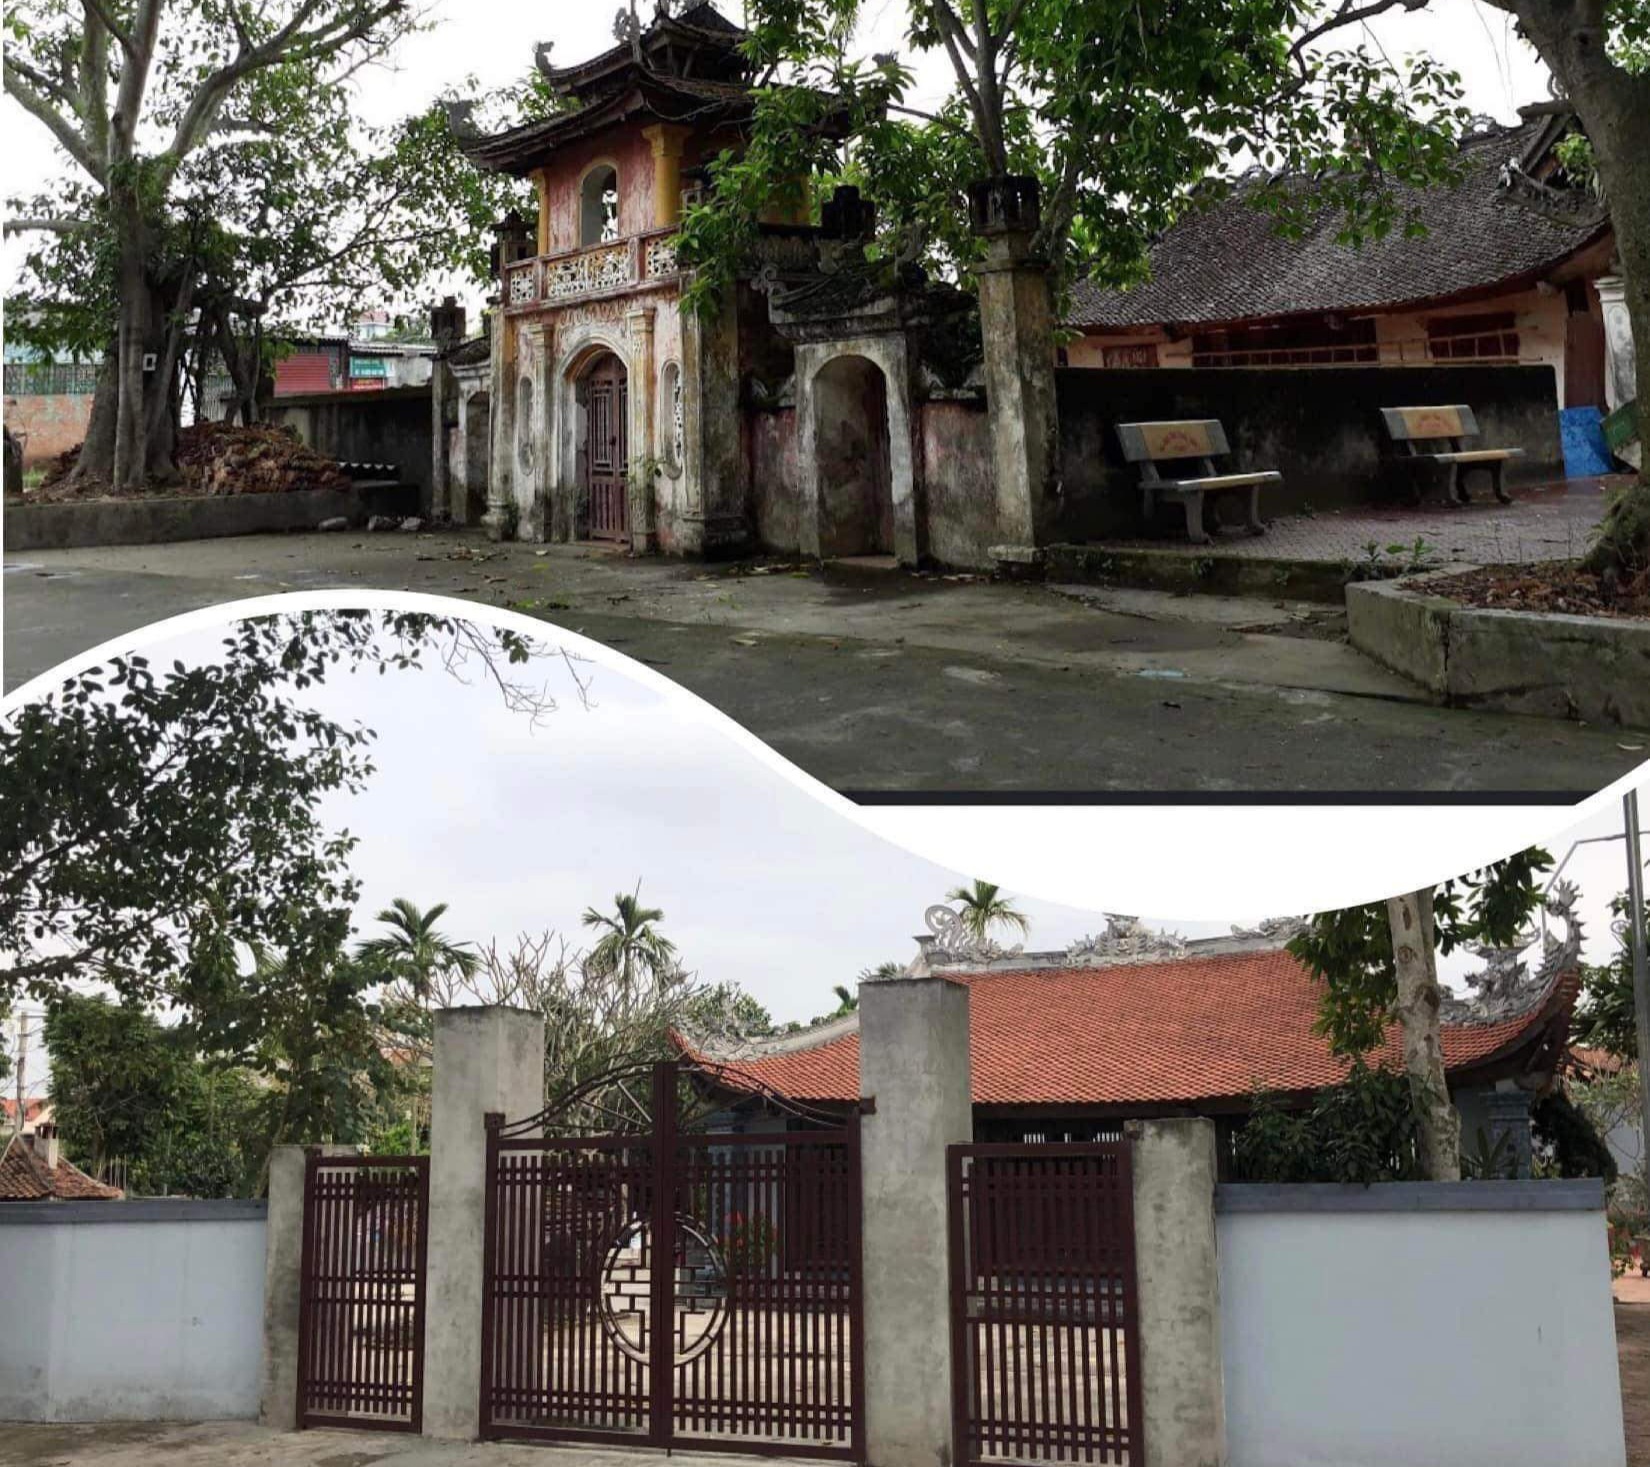 Cổng đền di tích cấp quốc gia ở Hải Dương bị phá bỏ, thay bằng cổng sắt